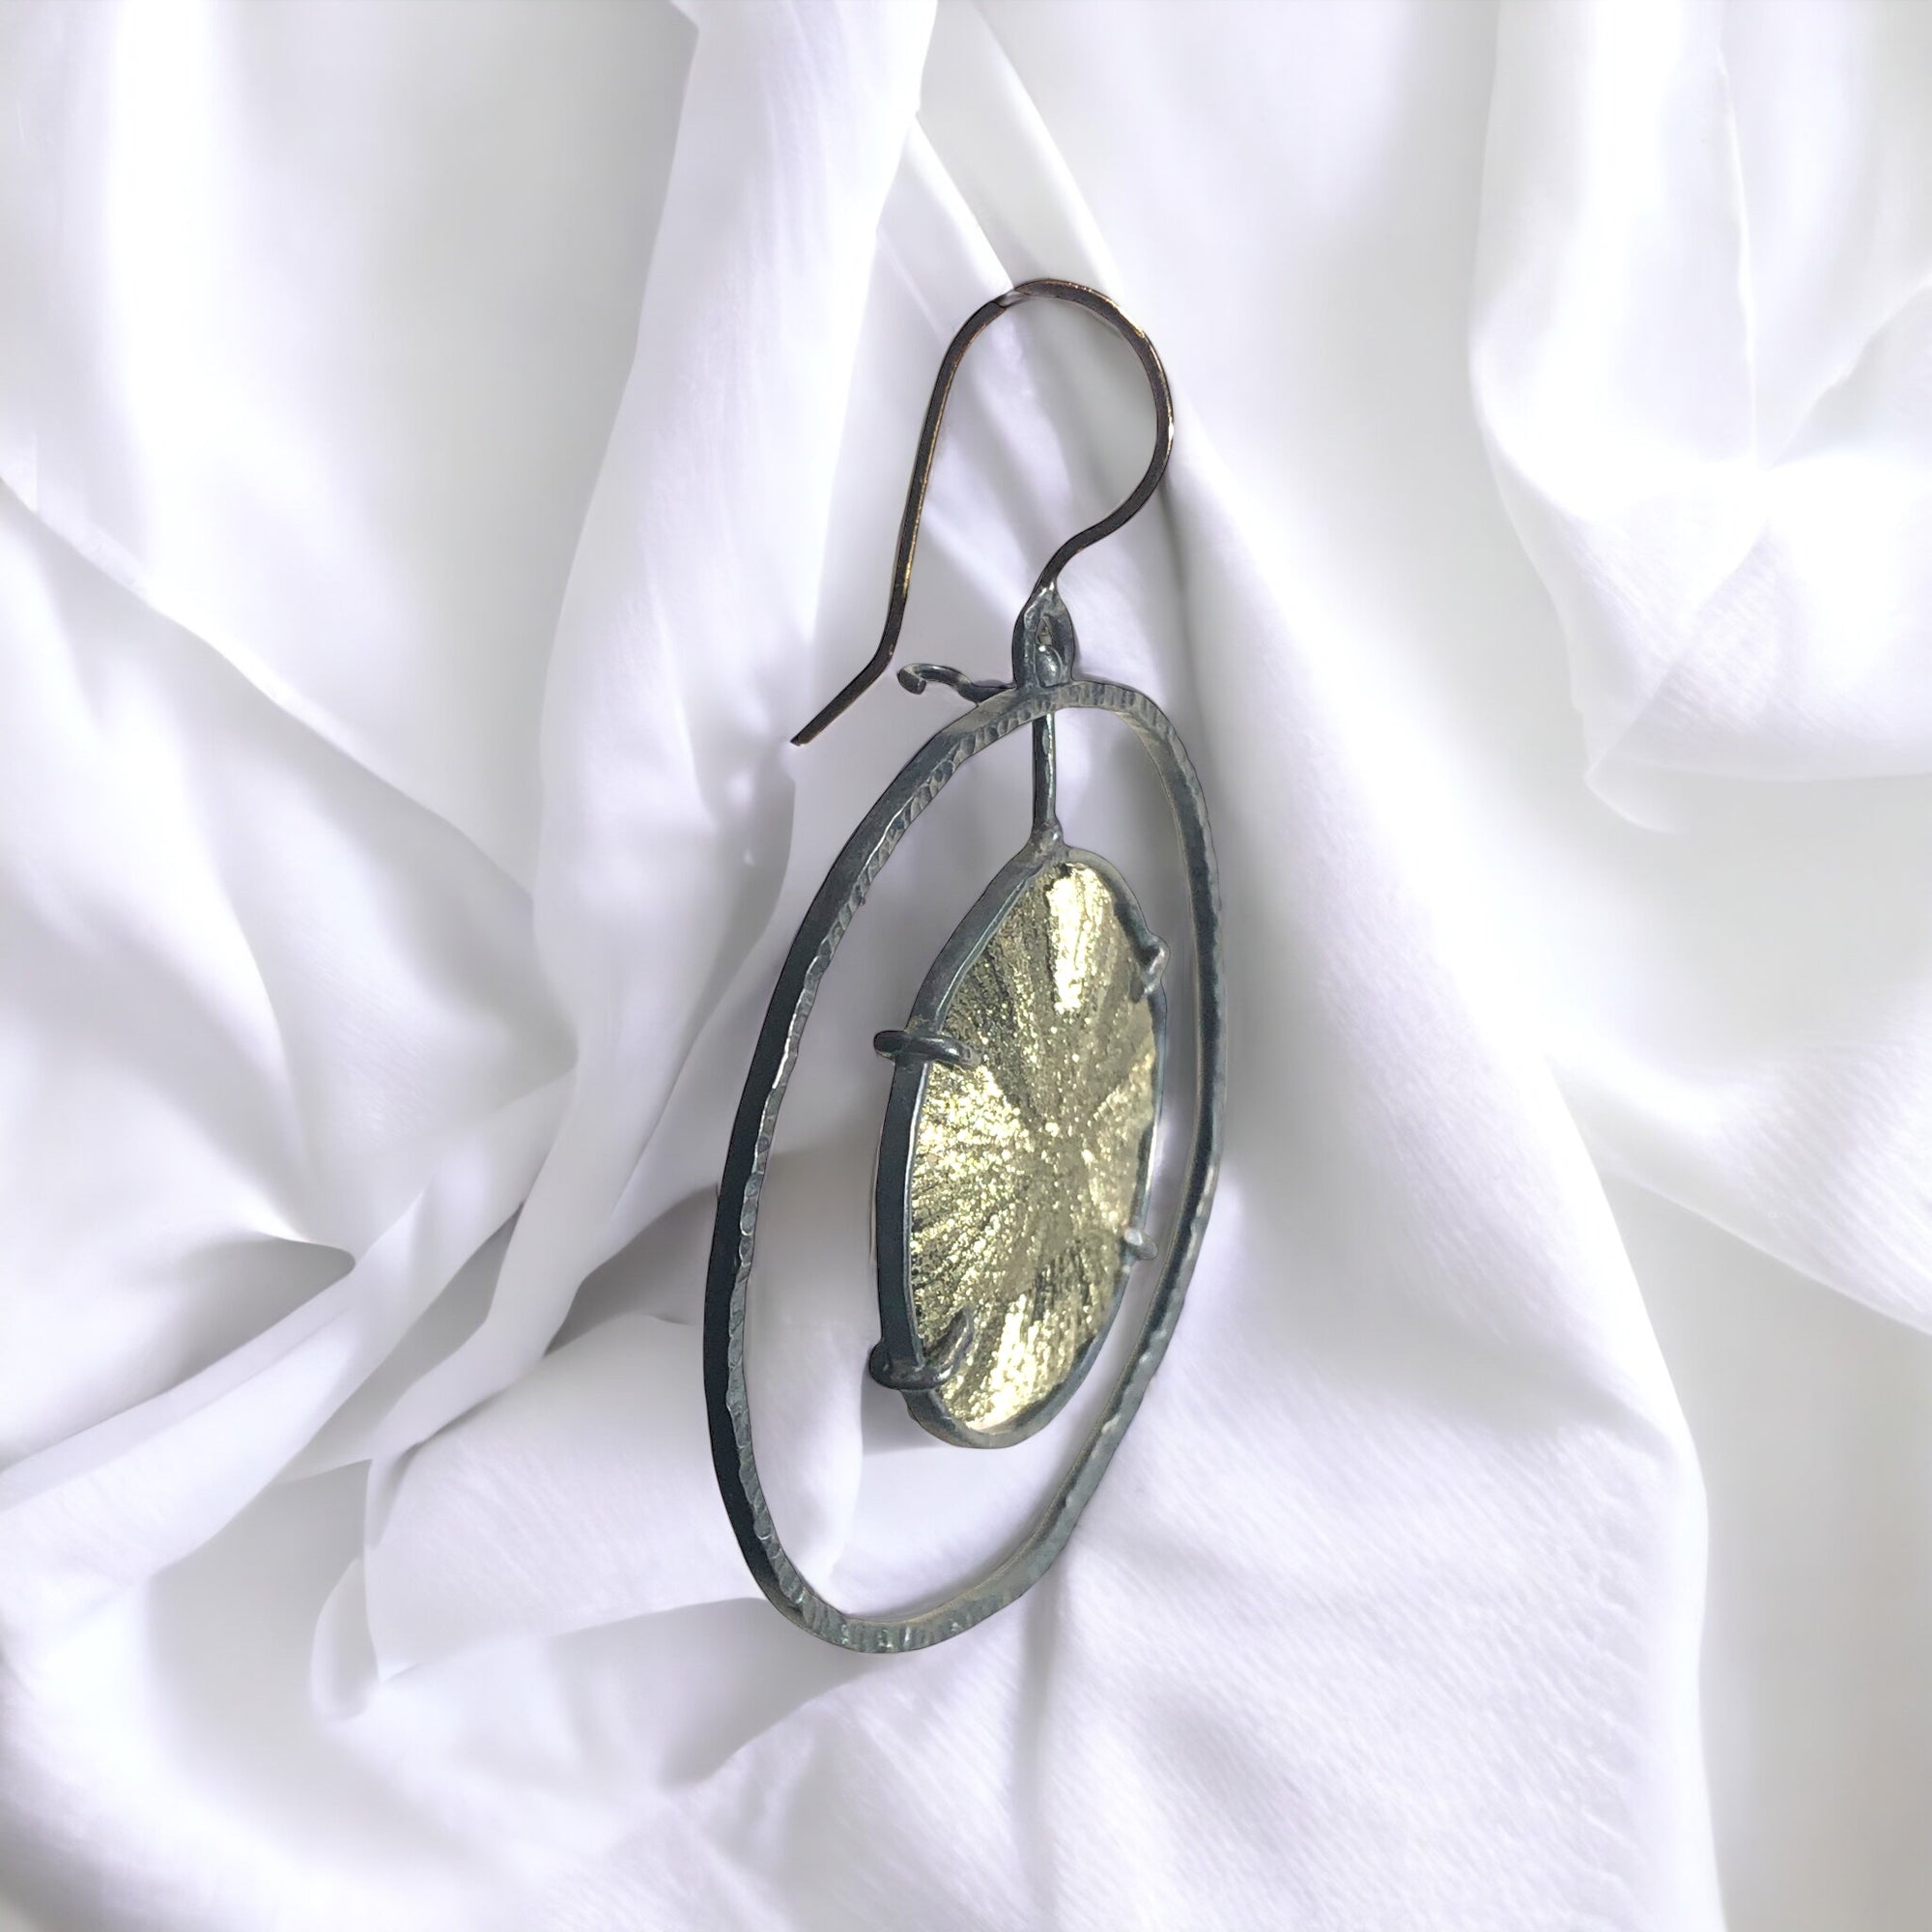 Silver Pyrite “Sun” Spinner Earrings